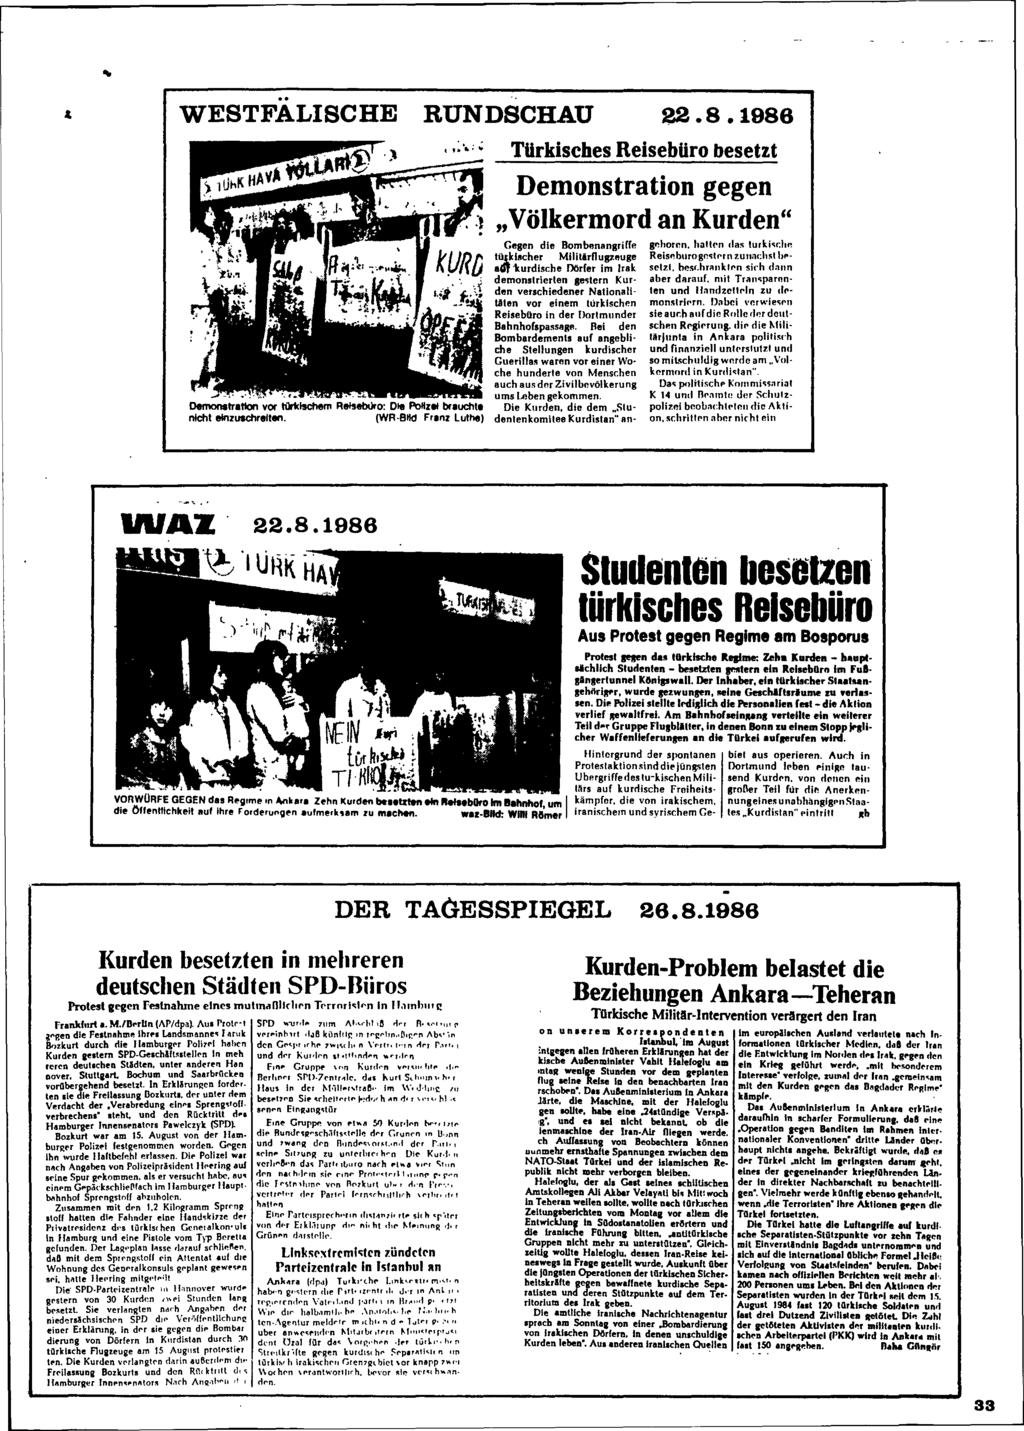 ... WESTFALISCHE RUNDSCHAU 22.8.1986 - ".-,' ;:'. ',t...,. _;1:. Demonstration vor tilr1dschem Reisebüro: Die PoIIzai brauchla nlchl einzuschreiten. (WR.